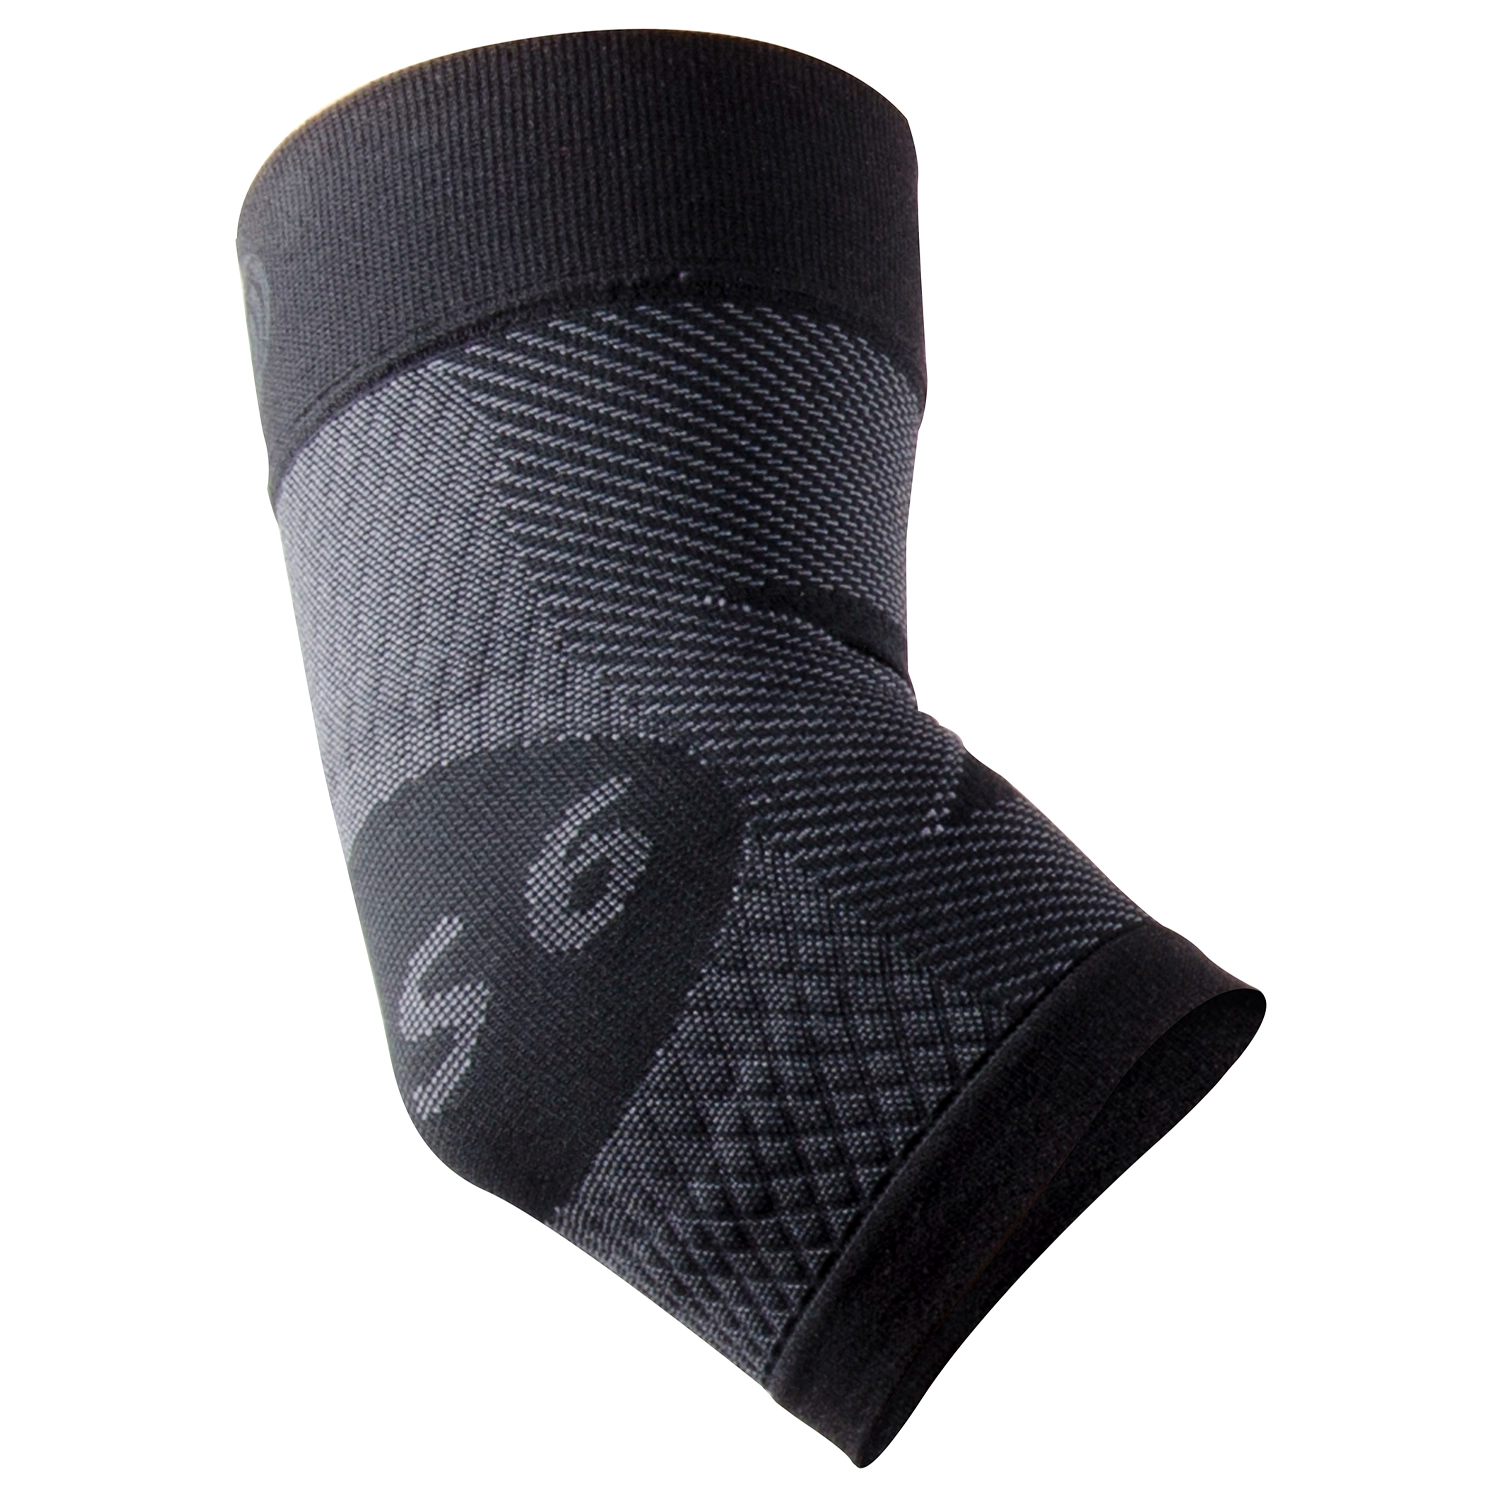 ES6 Elbow Bracing Sleeve in black | OS1st